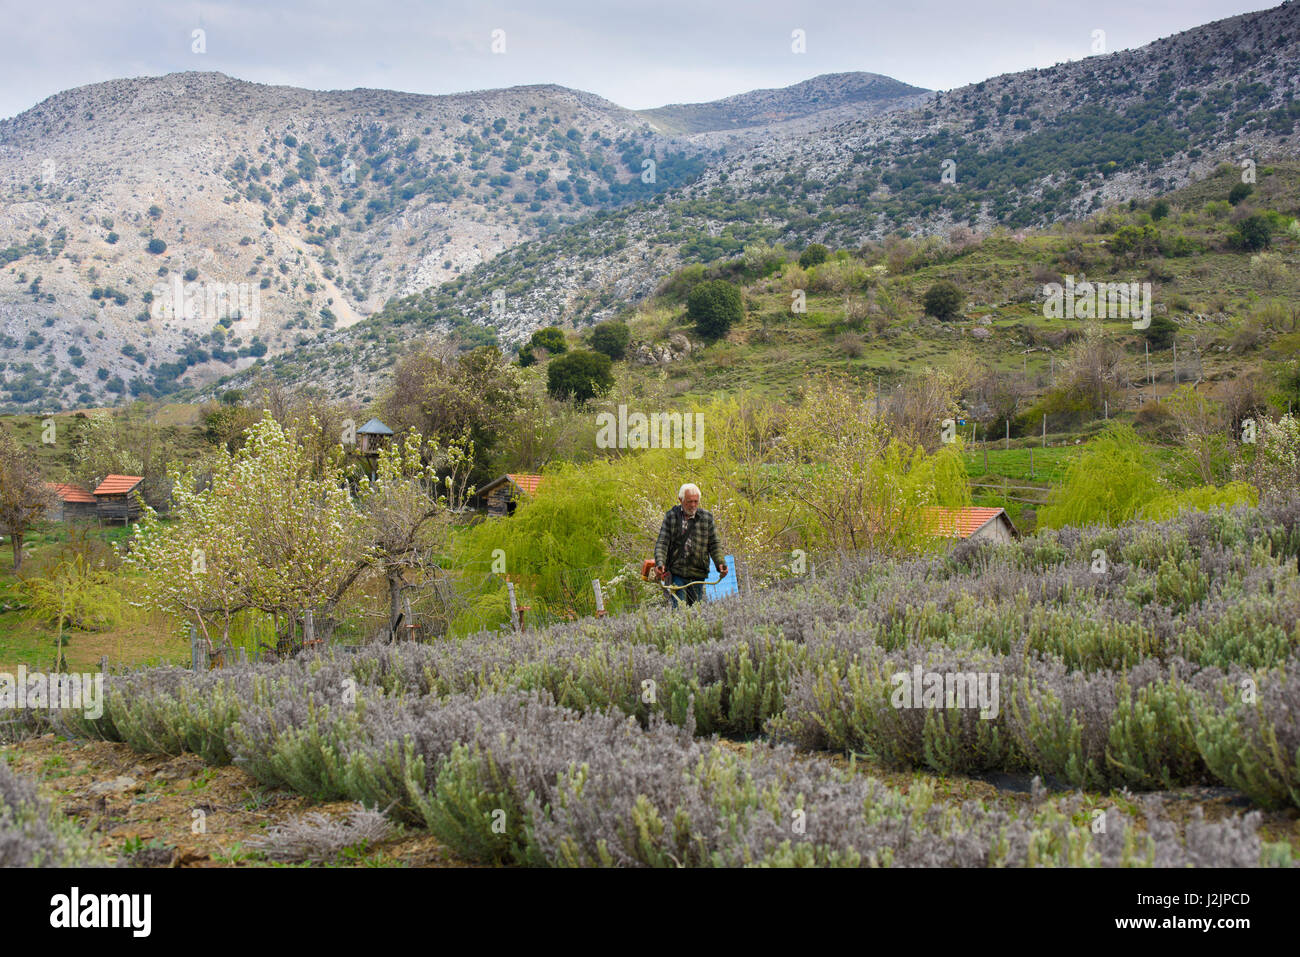 Un homme strimming un champ de lavande, Lasinthos Plateau, Lassithi, Crète, Grèce. Banque D'Images